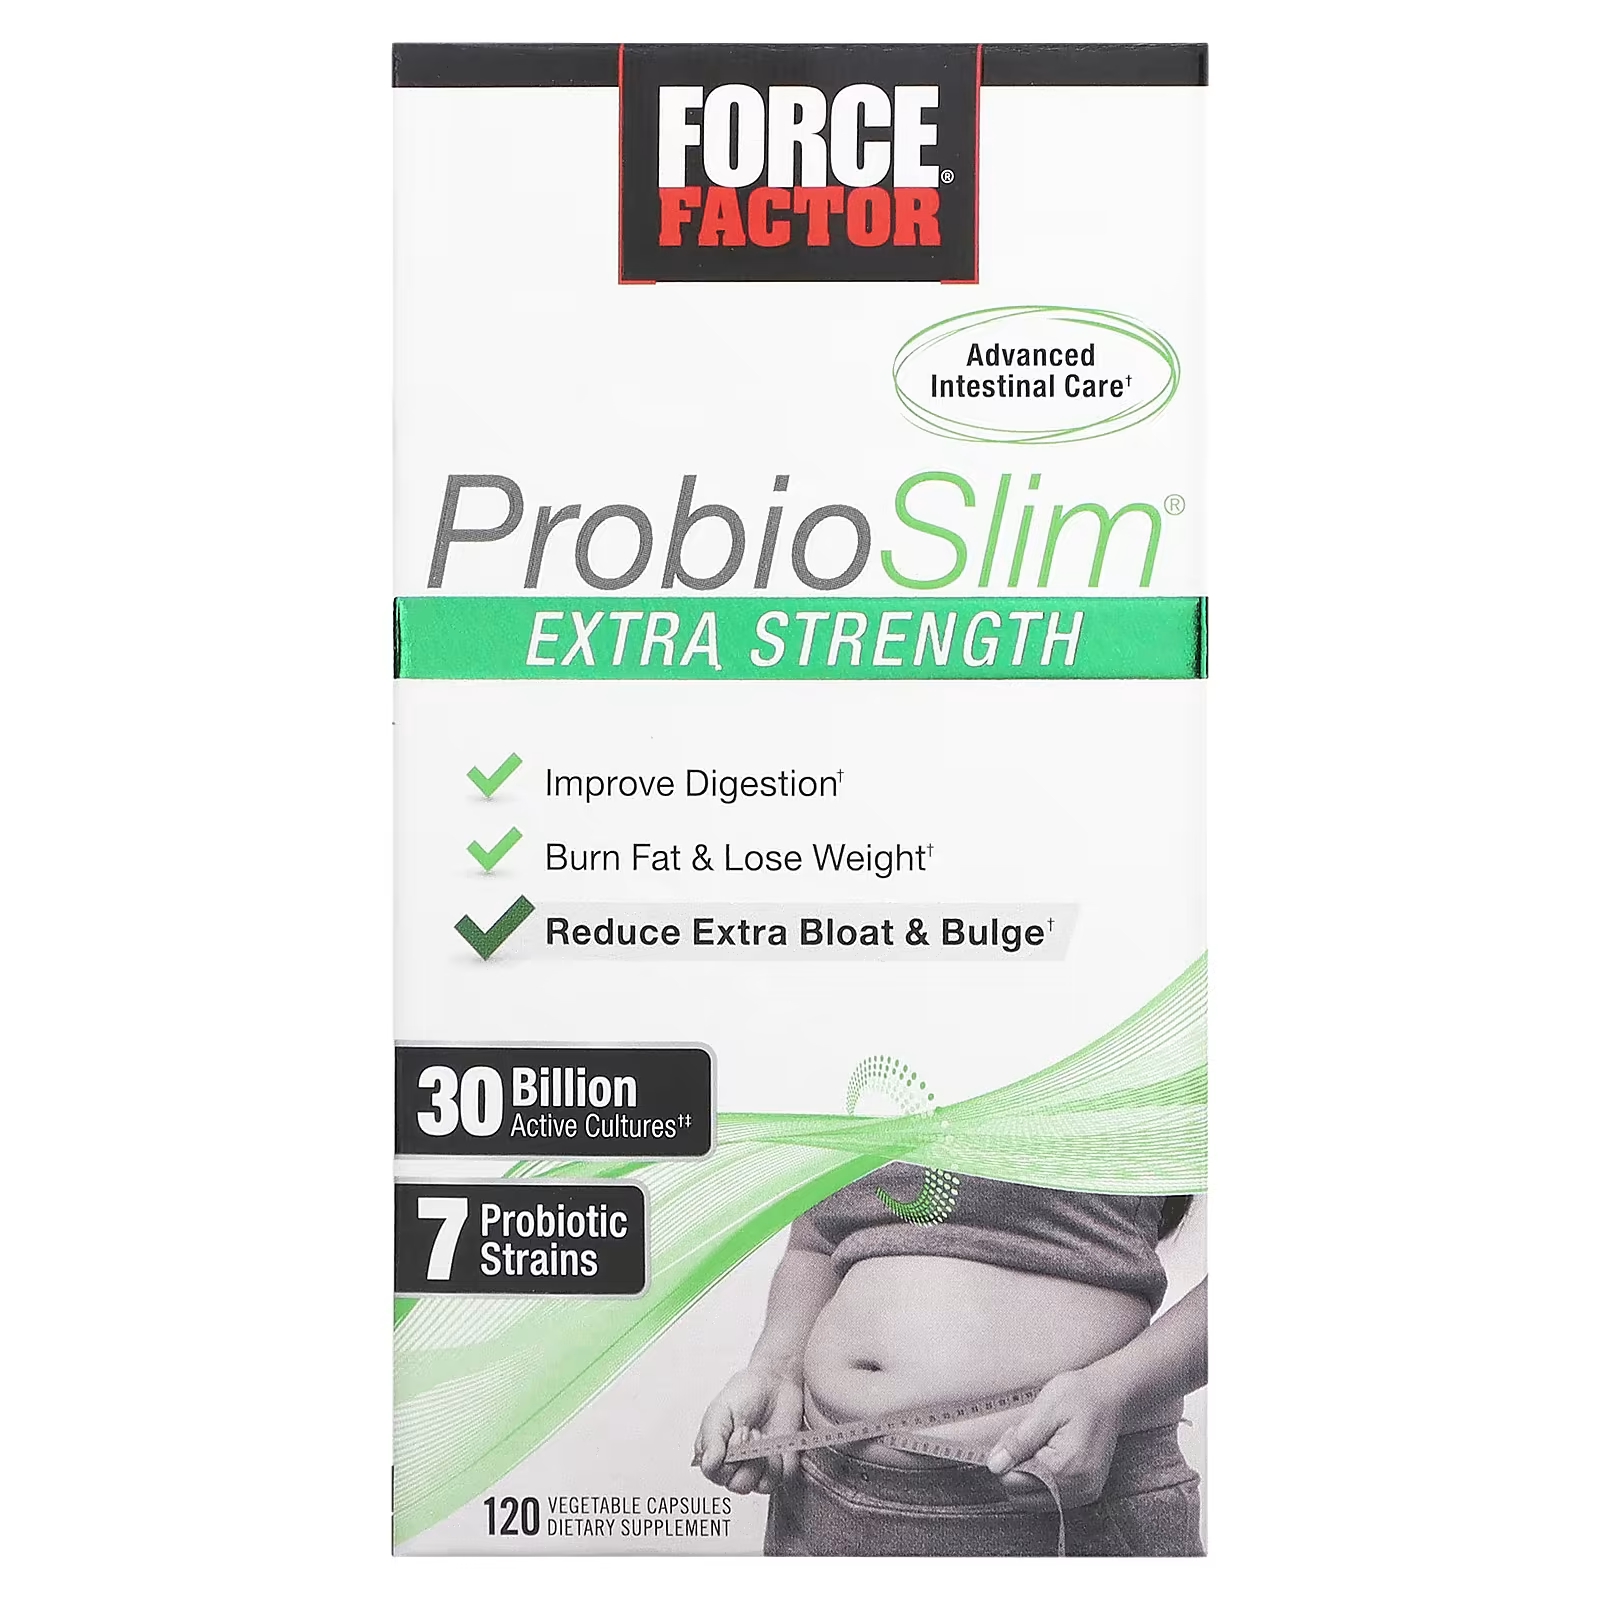 Force Factor ProbioSlim Extra Strength 30 миллиардов КОЕ, 120 растительных капсул force factor probioslim поддержка пищеварения контроль веса 30 капсул